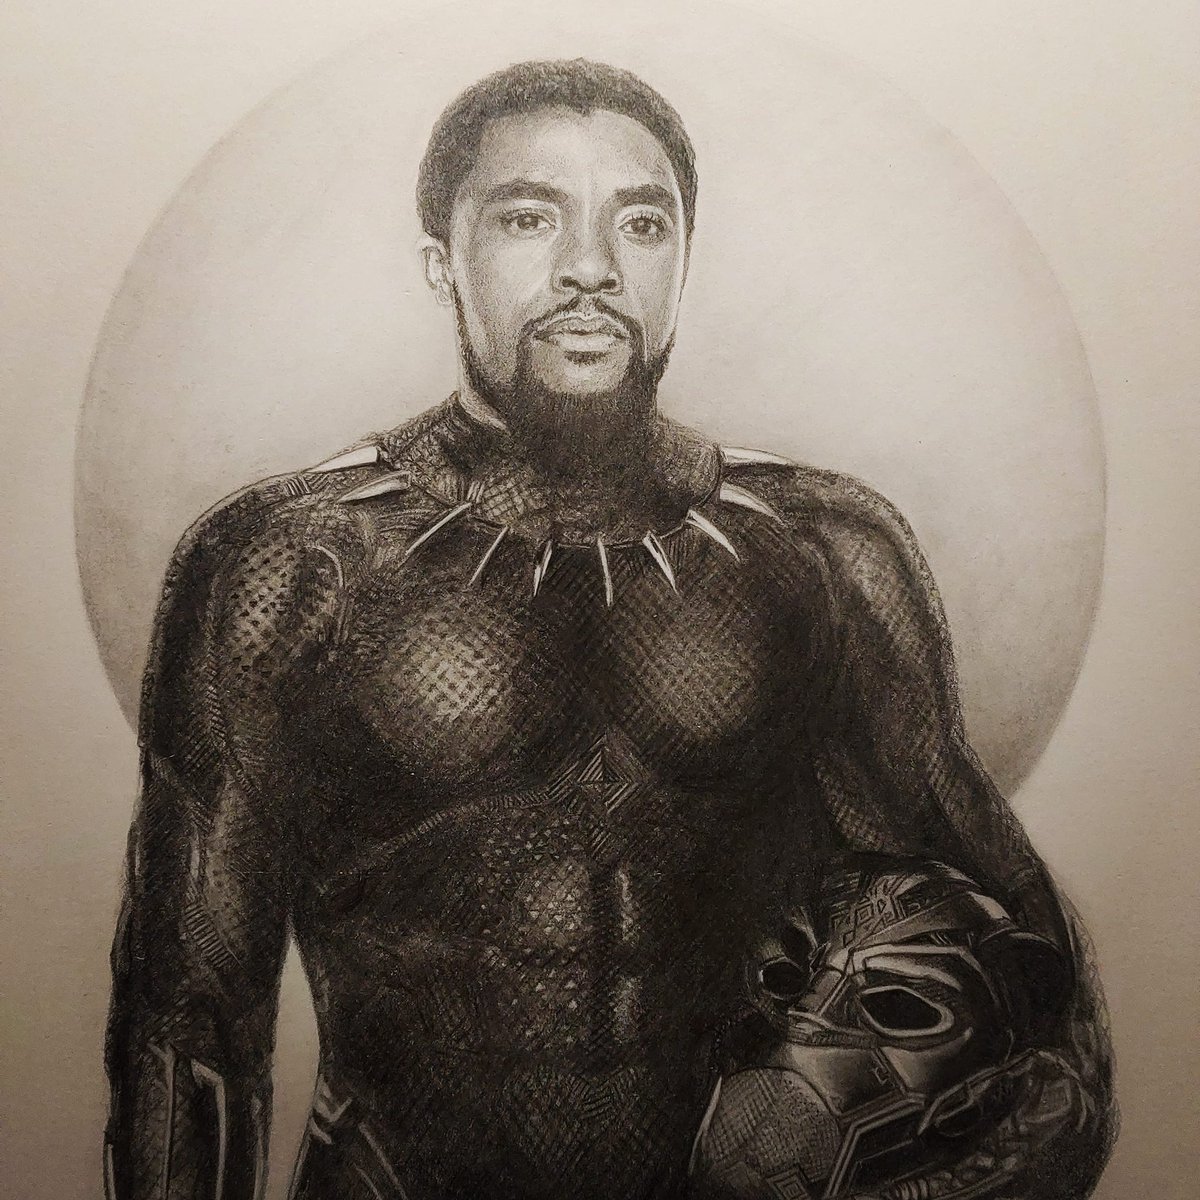 RT @DustinRidgen: Chadwick Boseman Black Panther print. https://t.co/8HEKoSwo3s